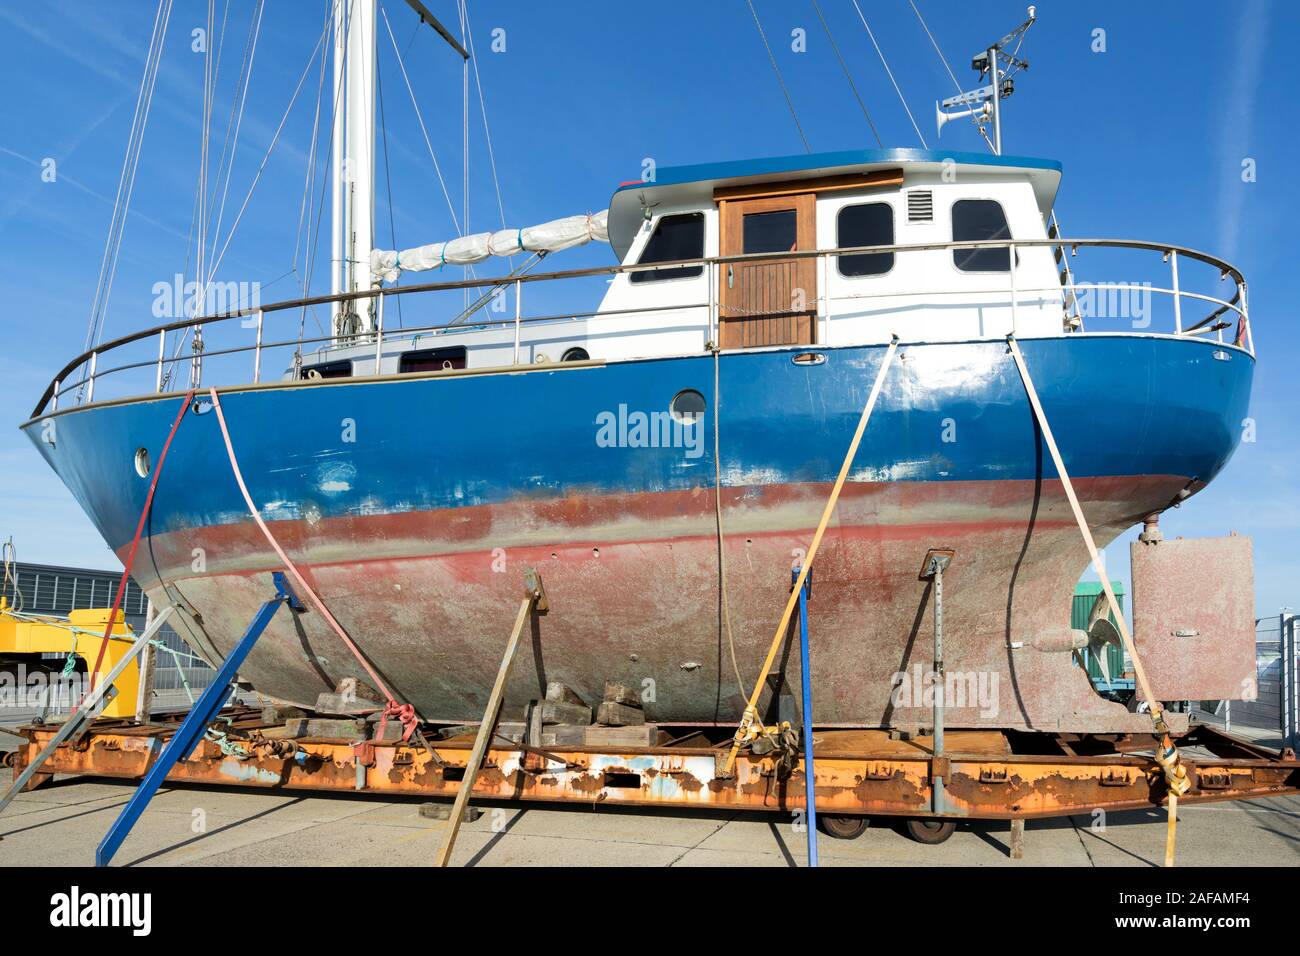 Memorizzati onshore yacht a vela di svernamento per Foto Stock